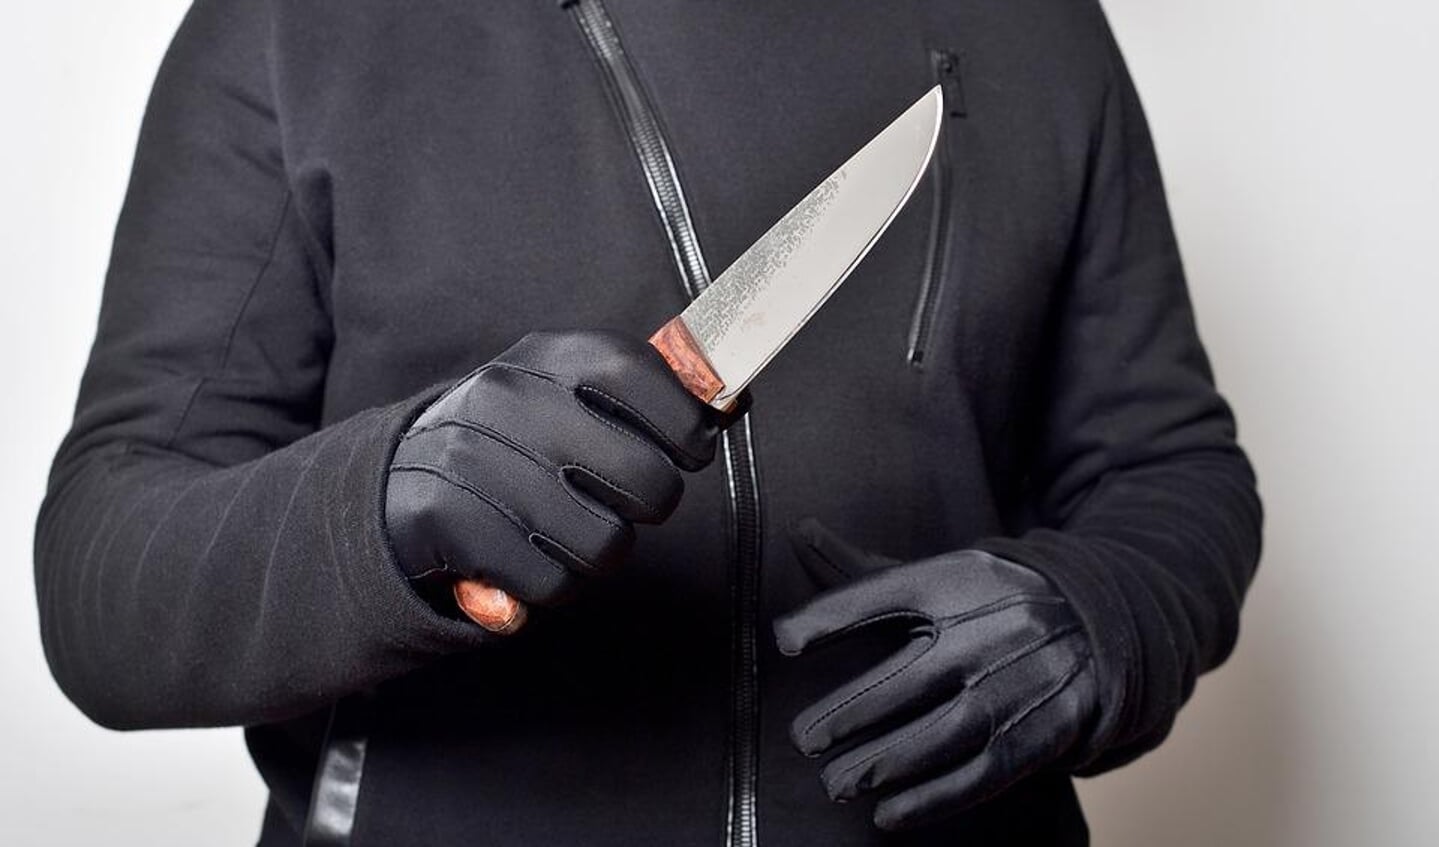 Jongeren vertelden in een bericht van Omroep West dat het dragen van een mes normaal is "om zich te kunnen verdedigen".